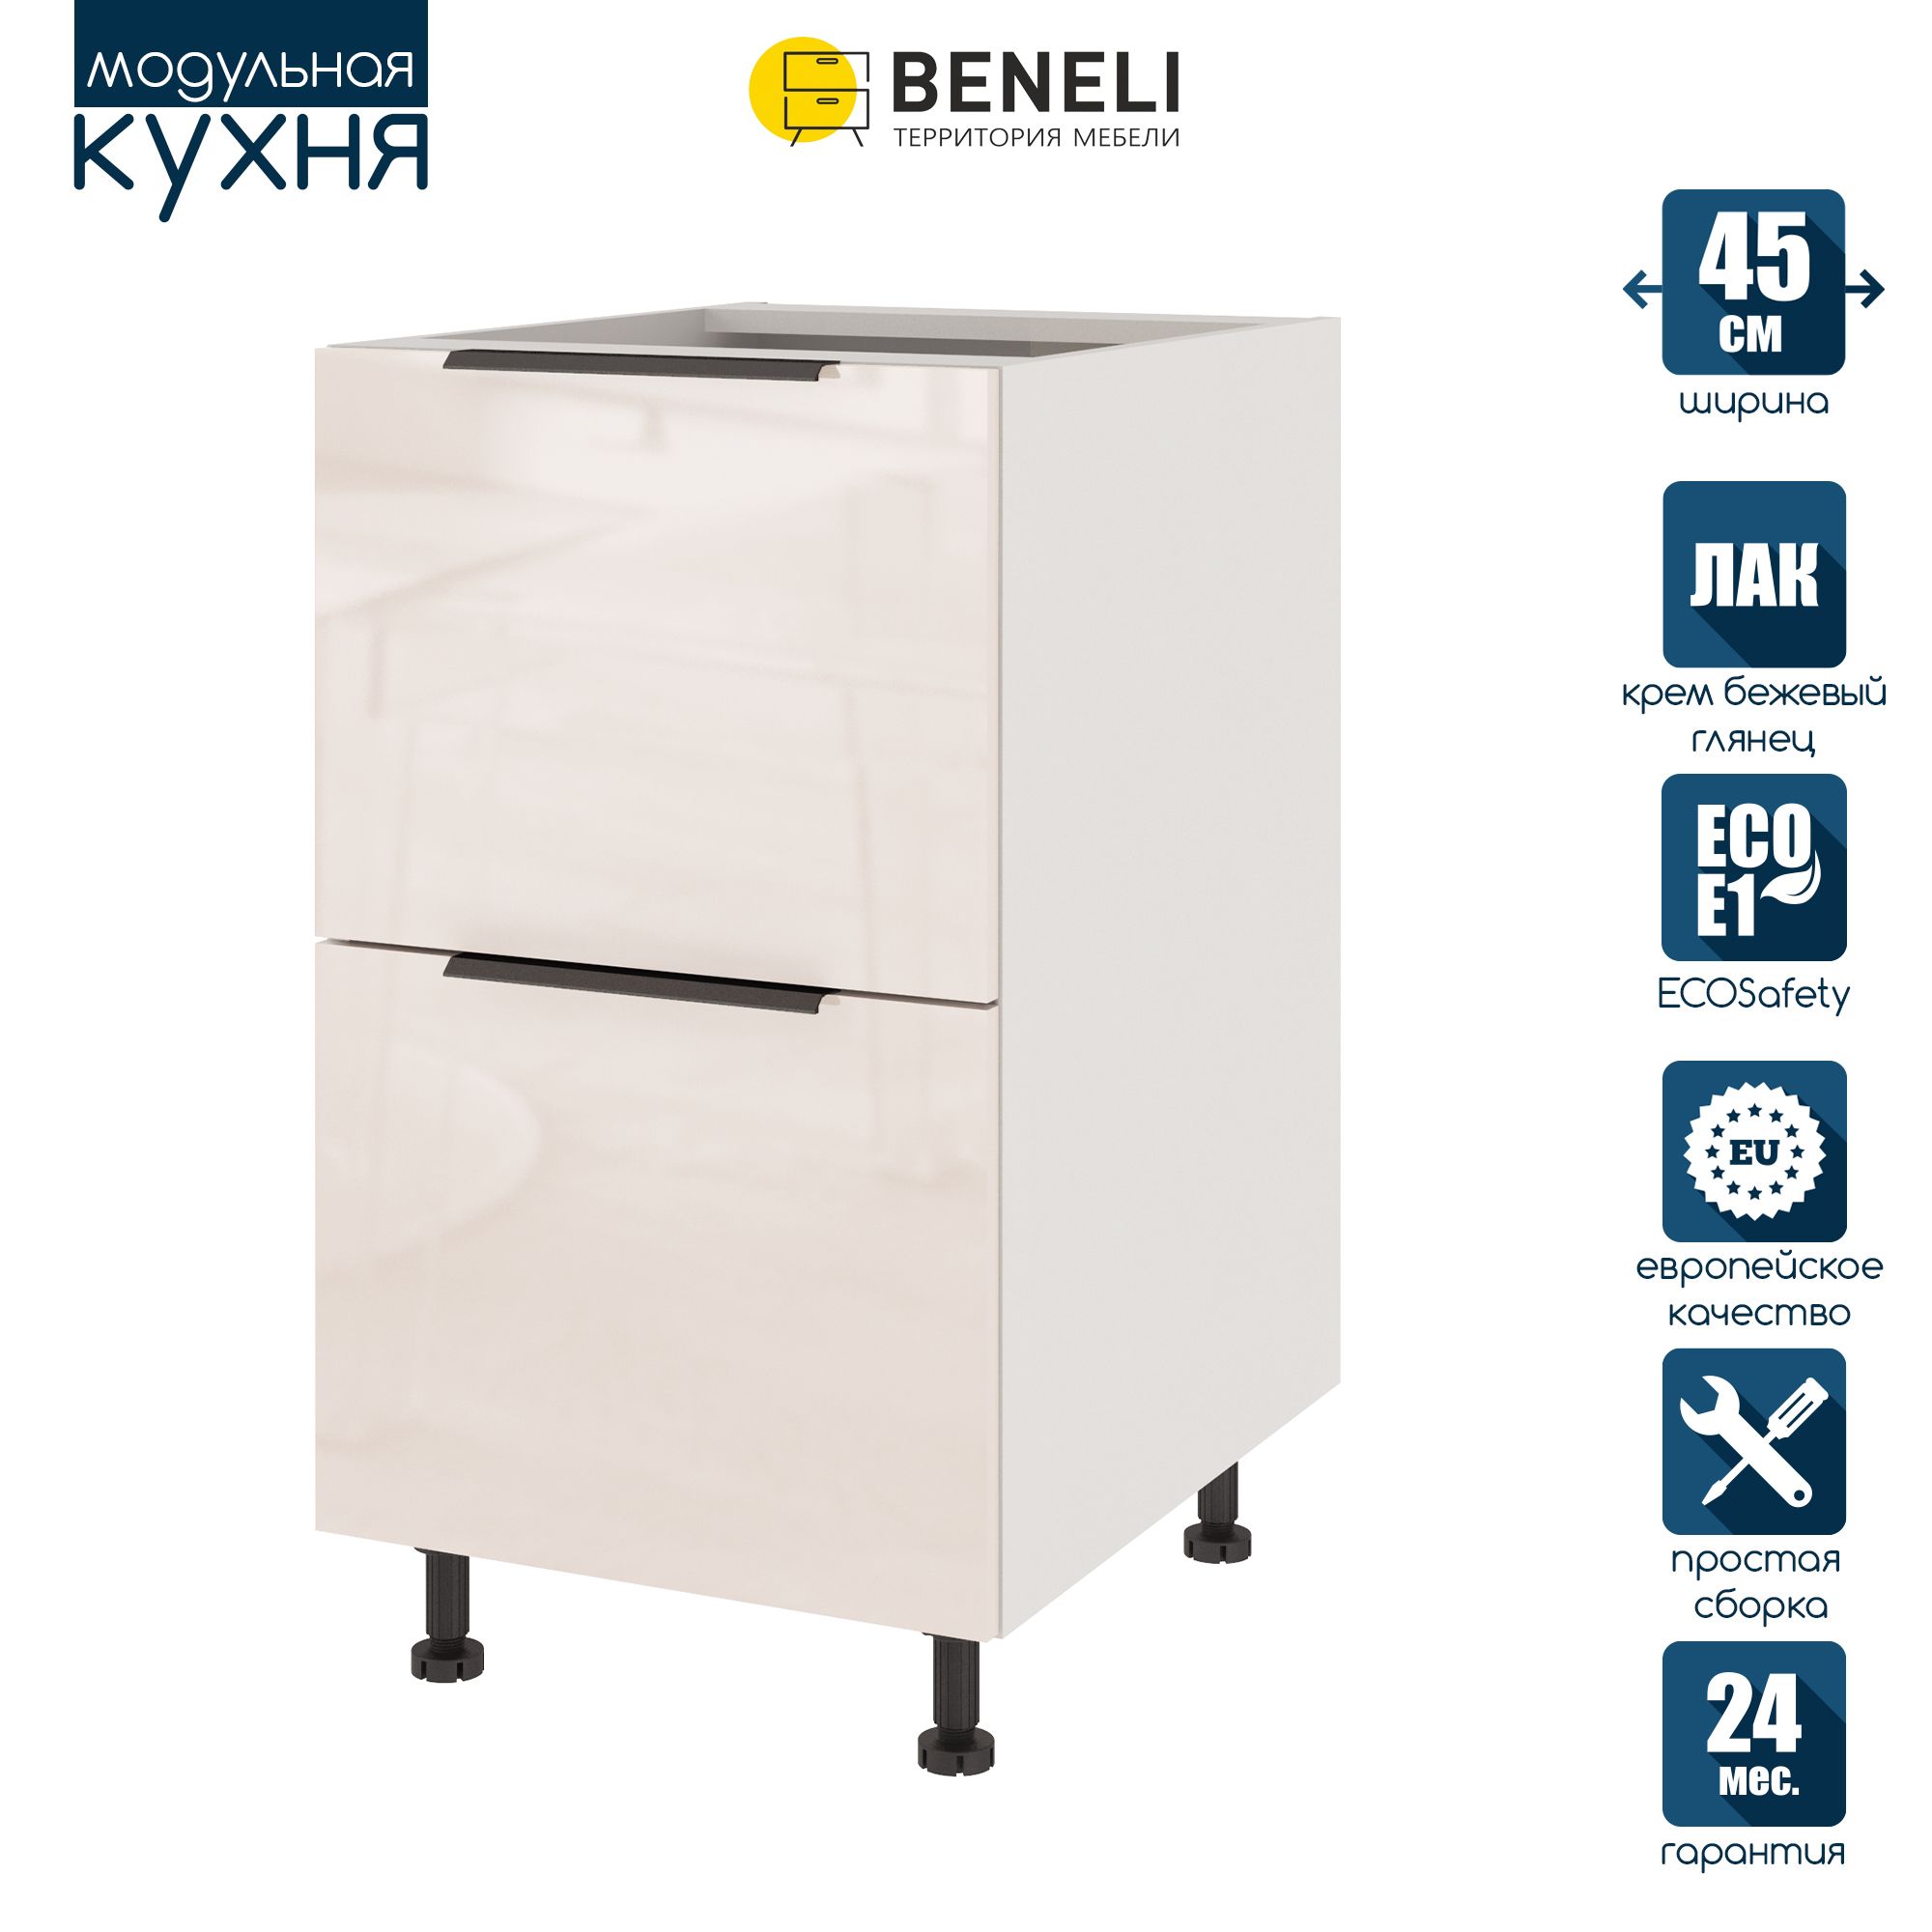 Кухонный модуль напольный Beneli COLOR, Крем бежевый глянец , с 2 ящиками, 45х57,6х82